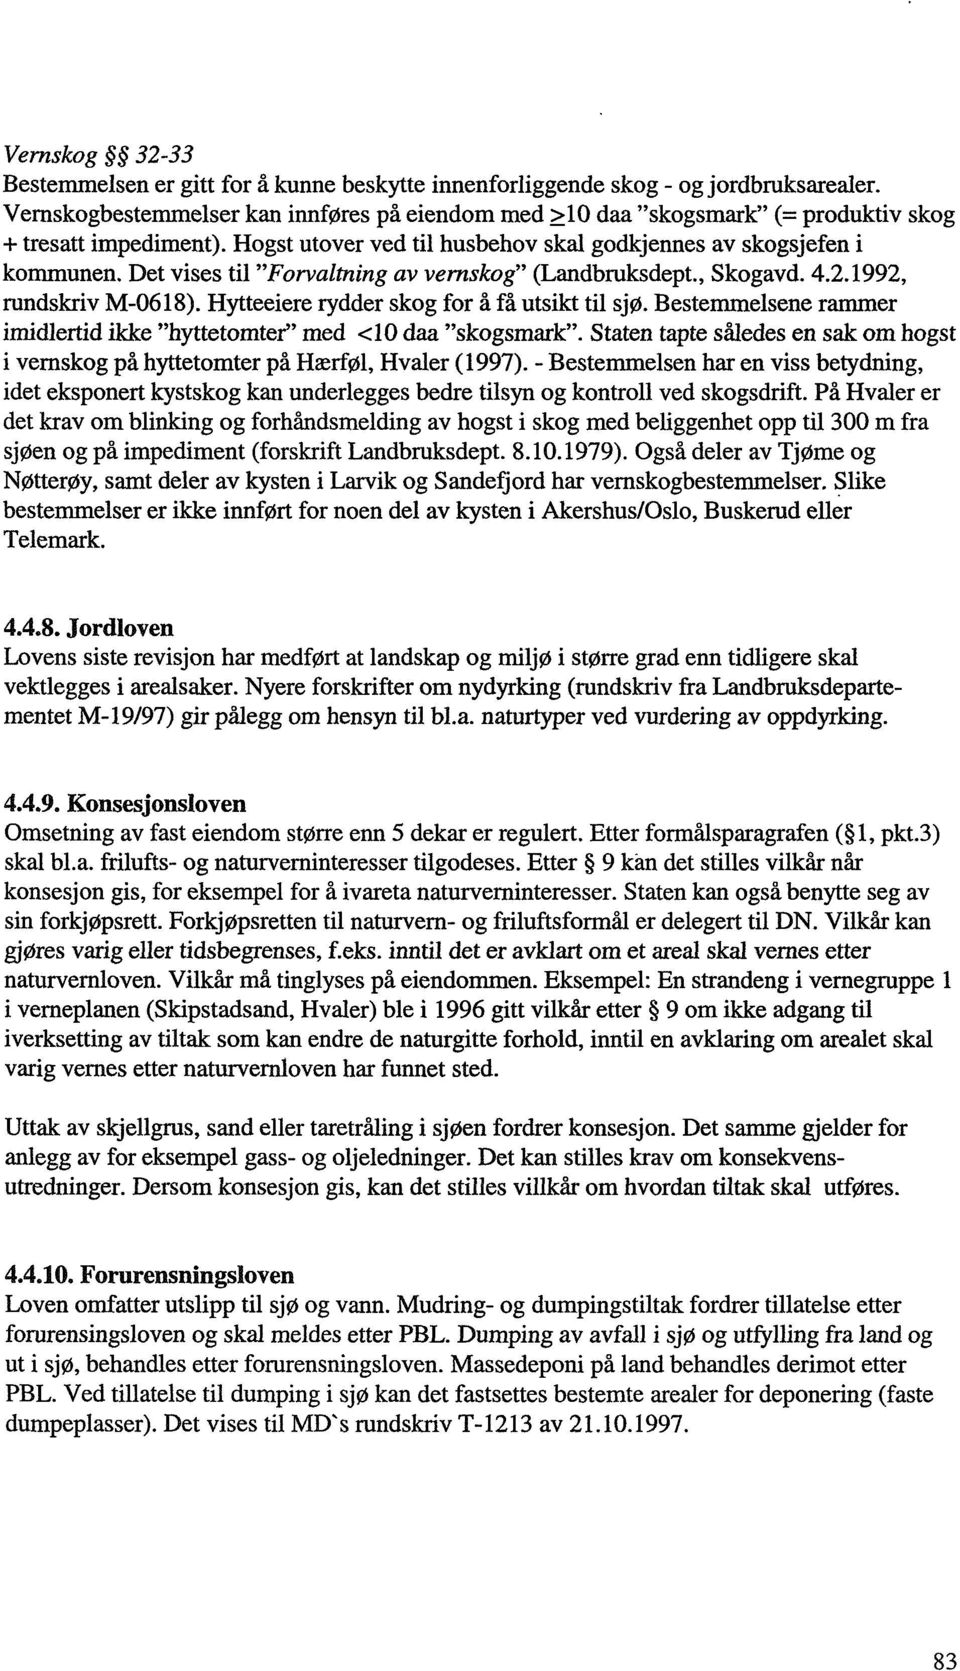 Det vises til "Forvaltning av vemskog" (Landbruksdept., Skogavd. 4.2.1992, rundskriv M-0618). Hytteeiere rydder skog for å få utsikt til sjø.